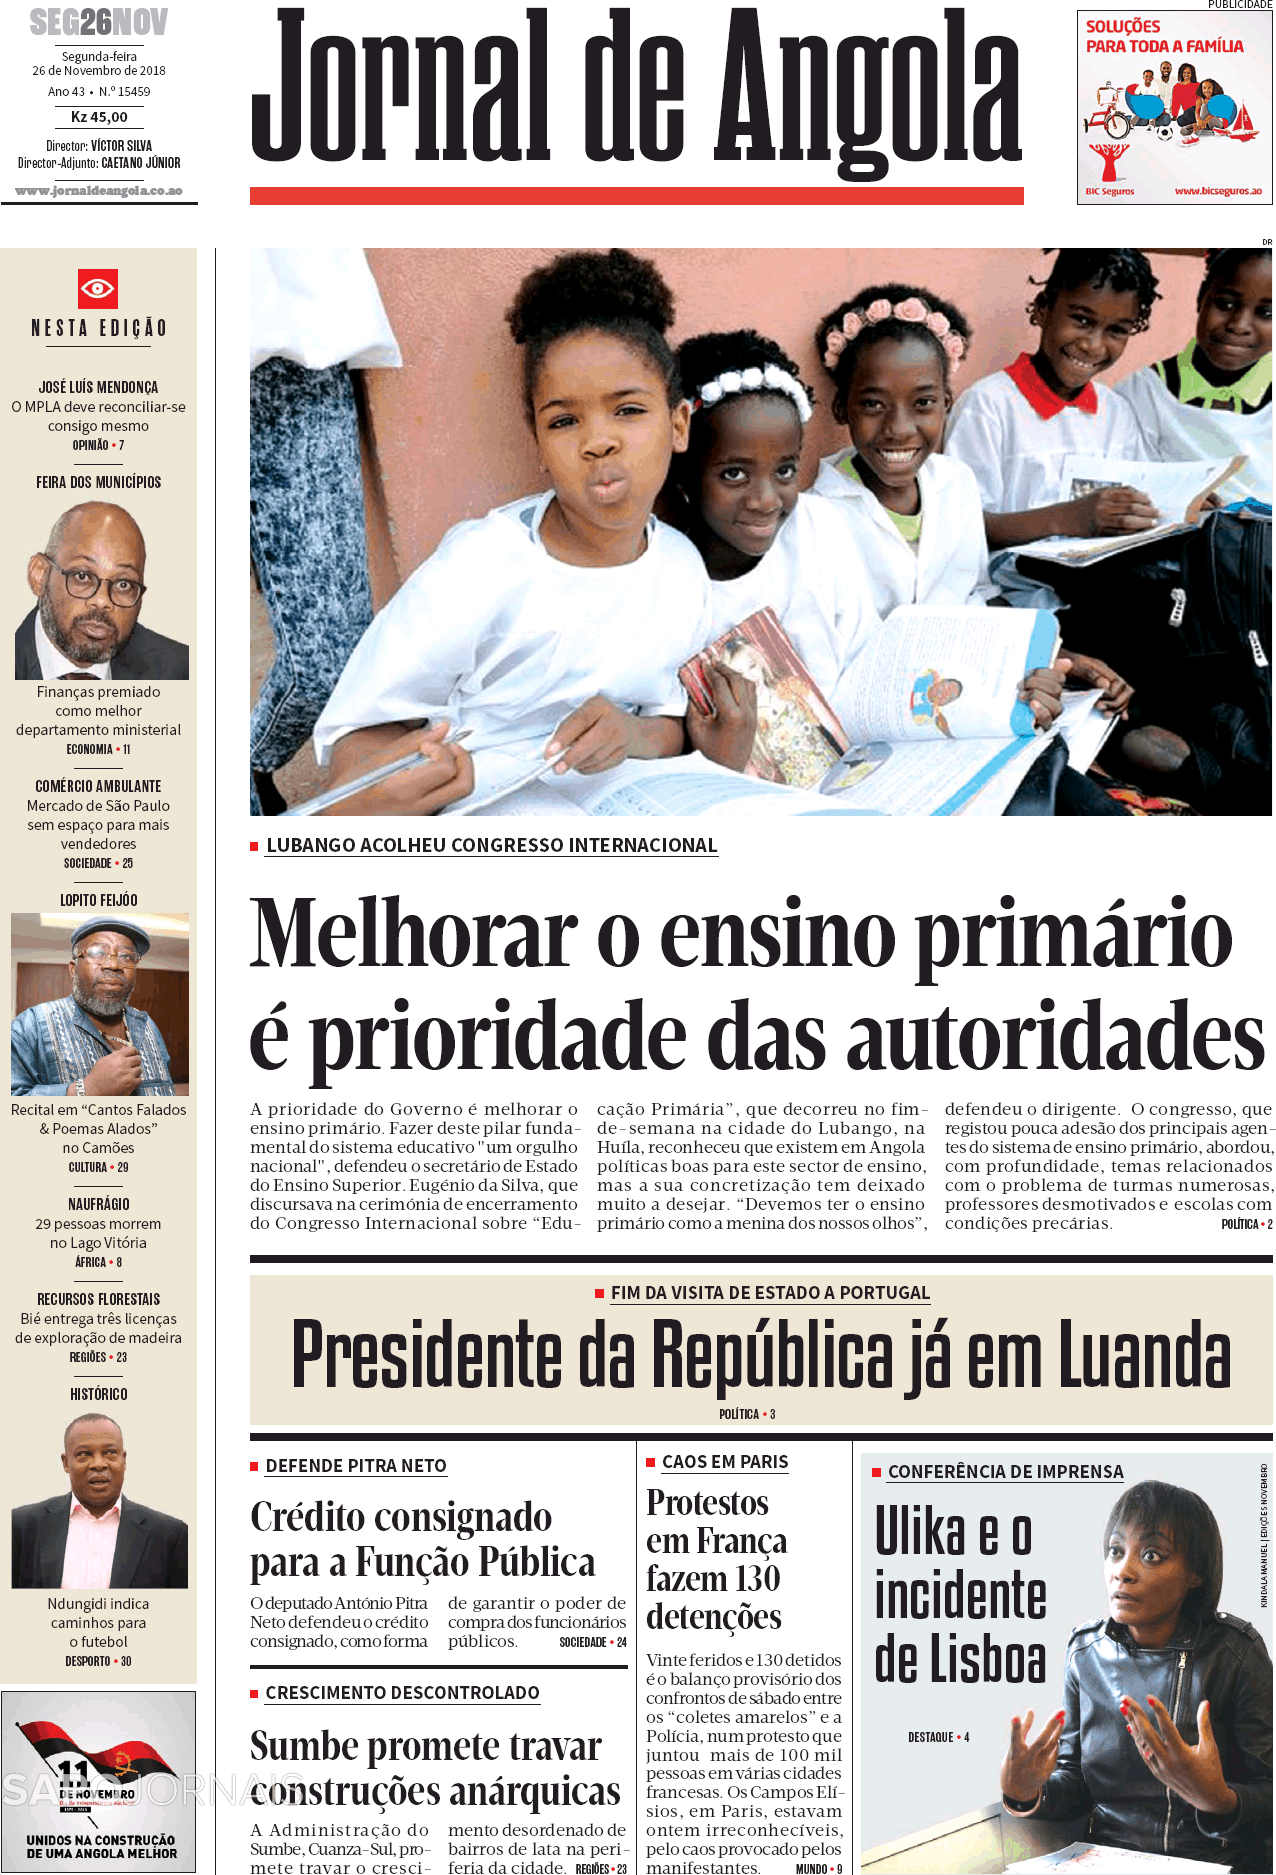 Jornal De Angola Nov Jornais E Revistas Sapo Pt Ltima Hora E Not Cias De Hoje